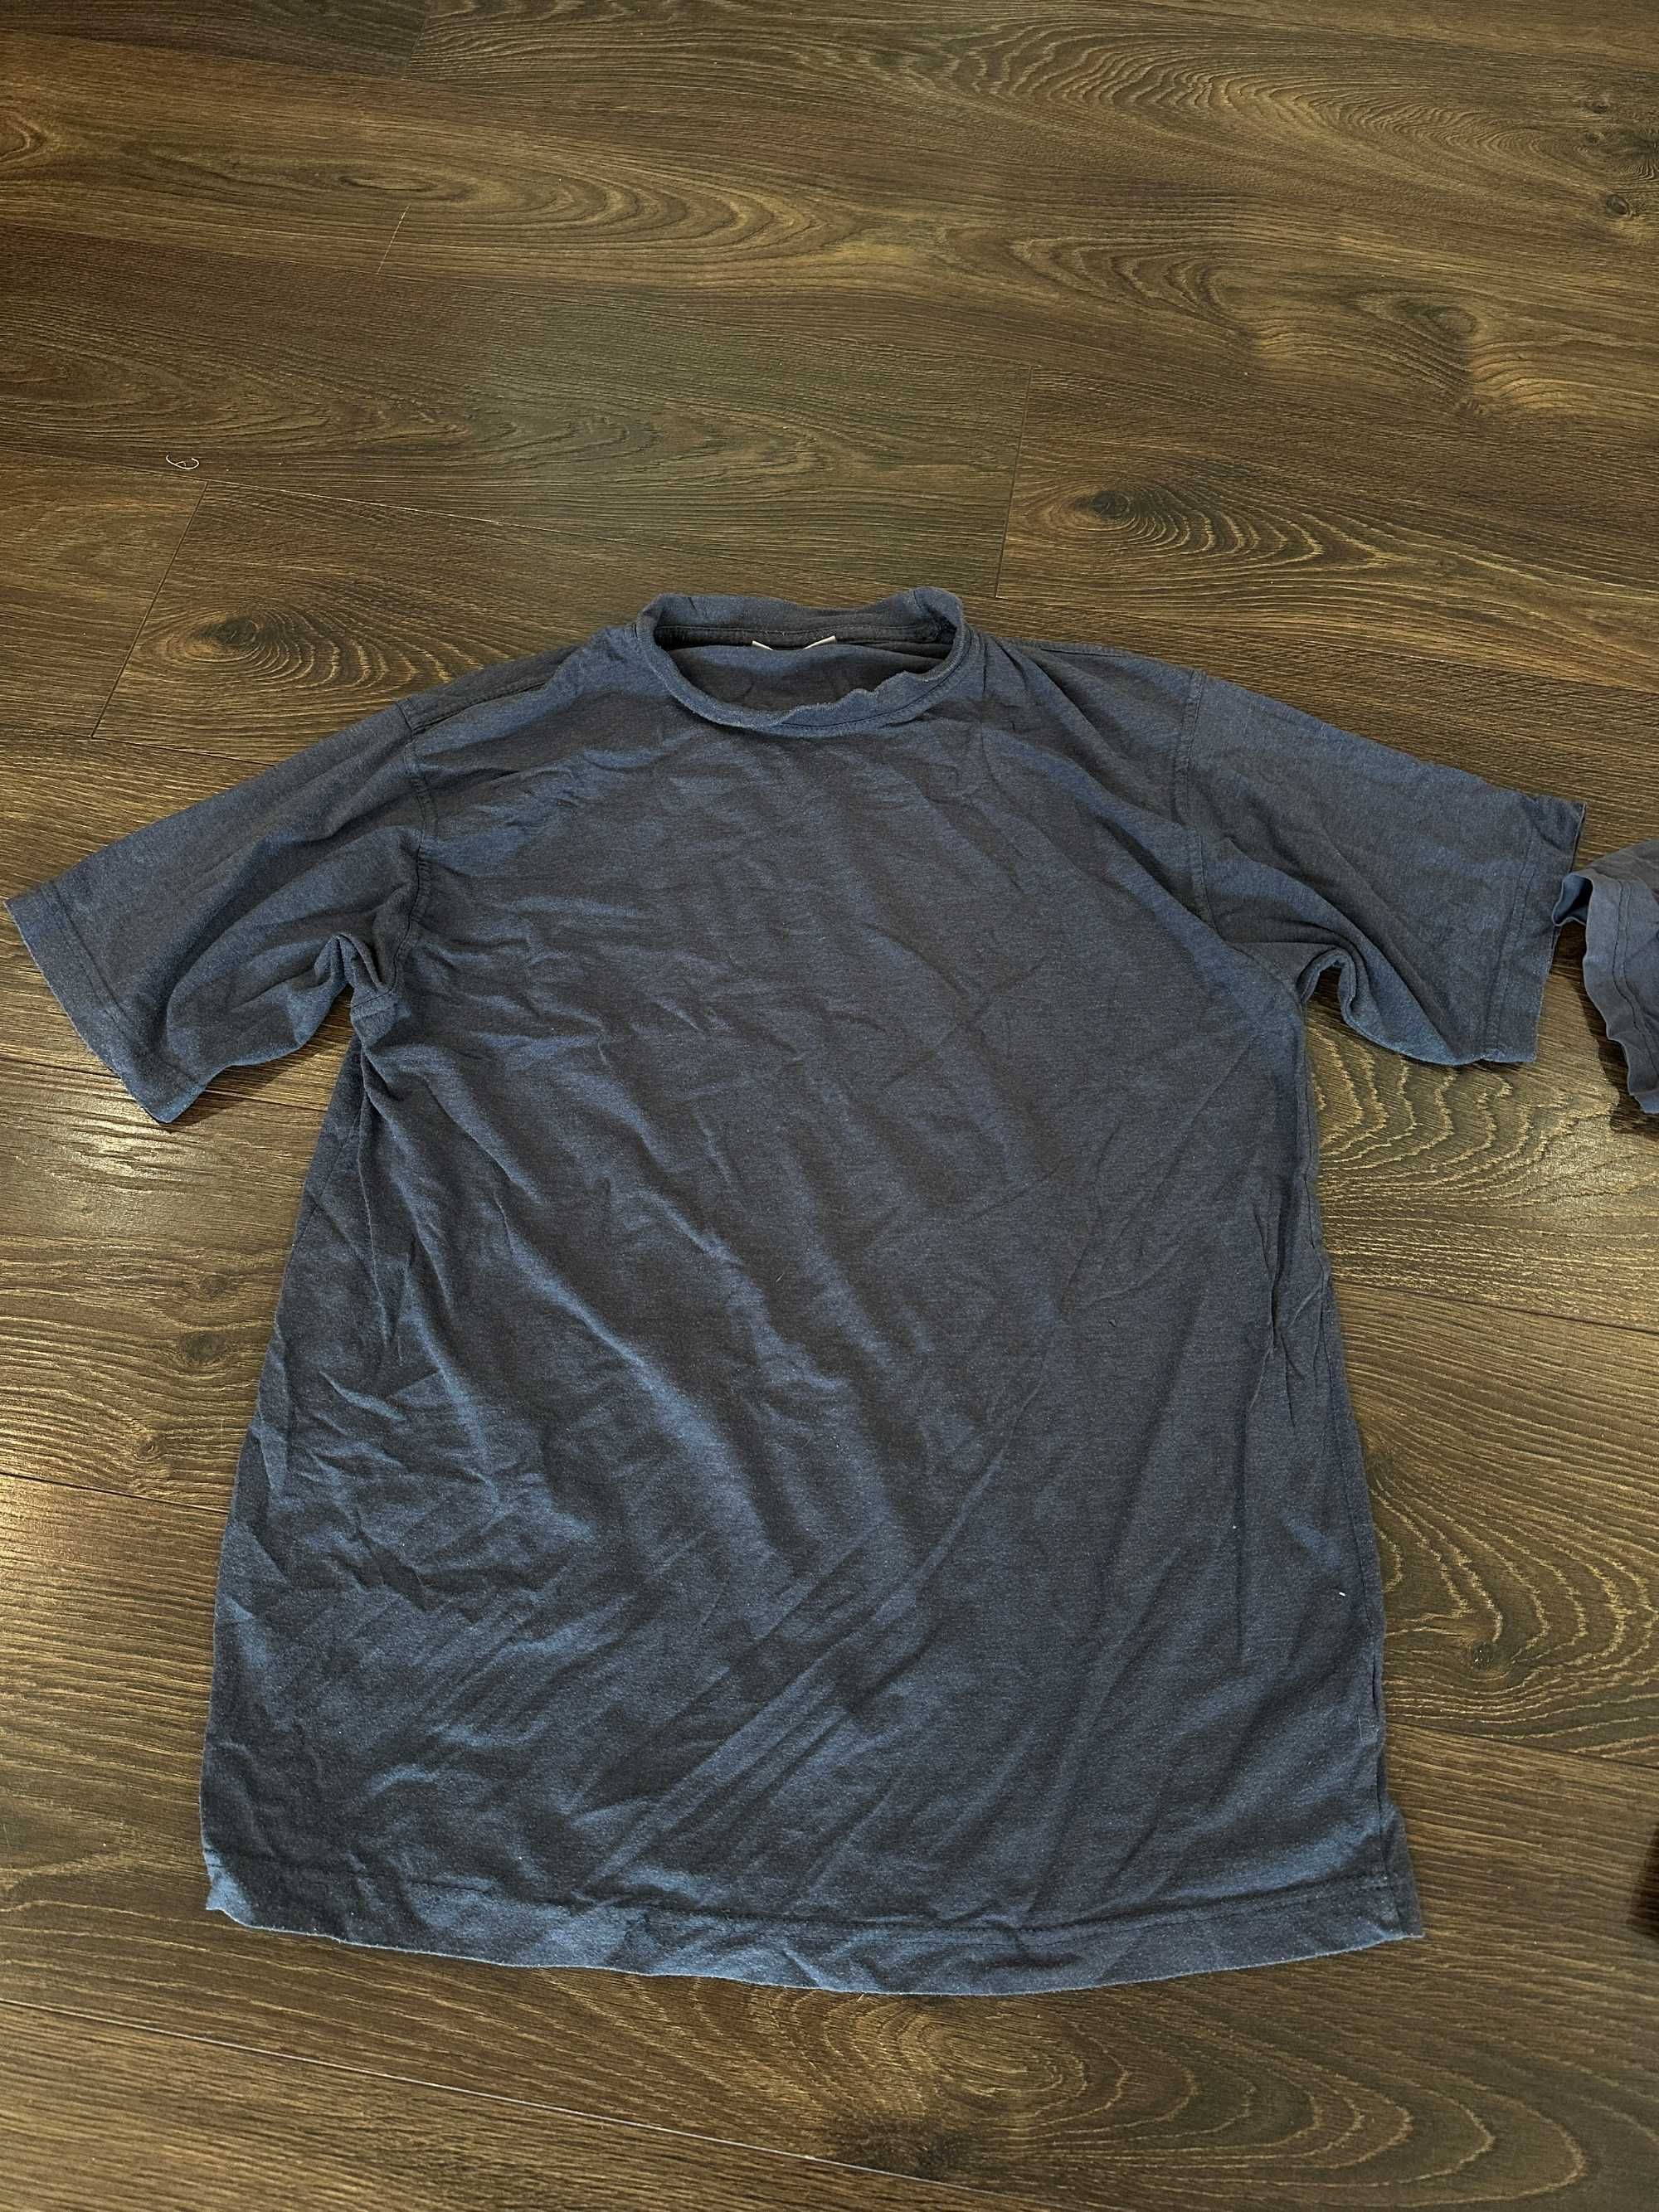 Пакет мужских вещей М-ХЛ кофта шорты трусы футболка пуховик кеды